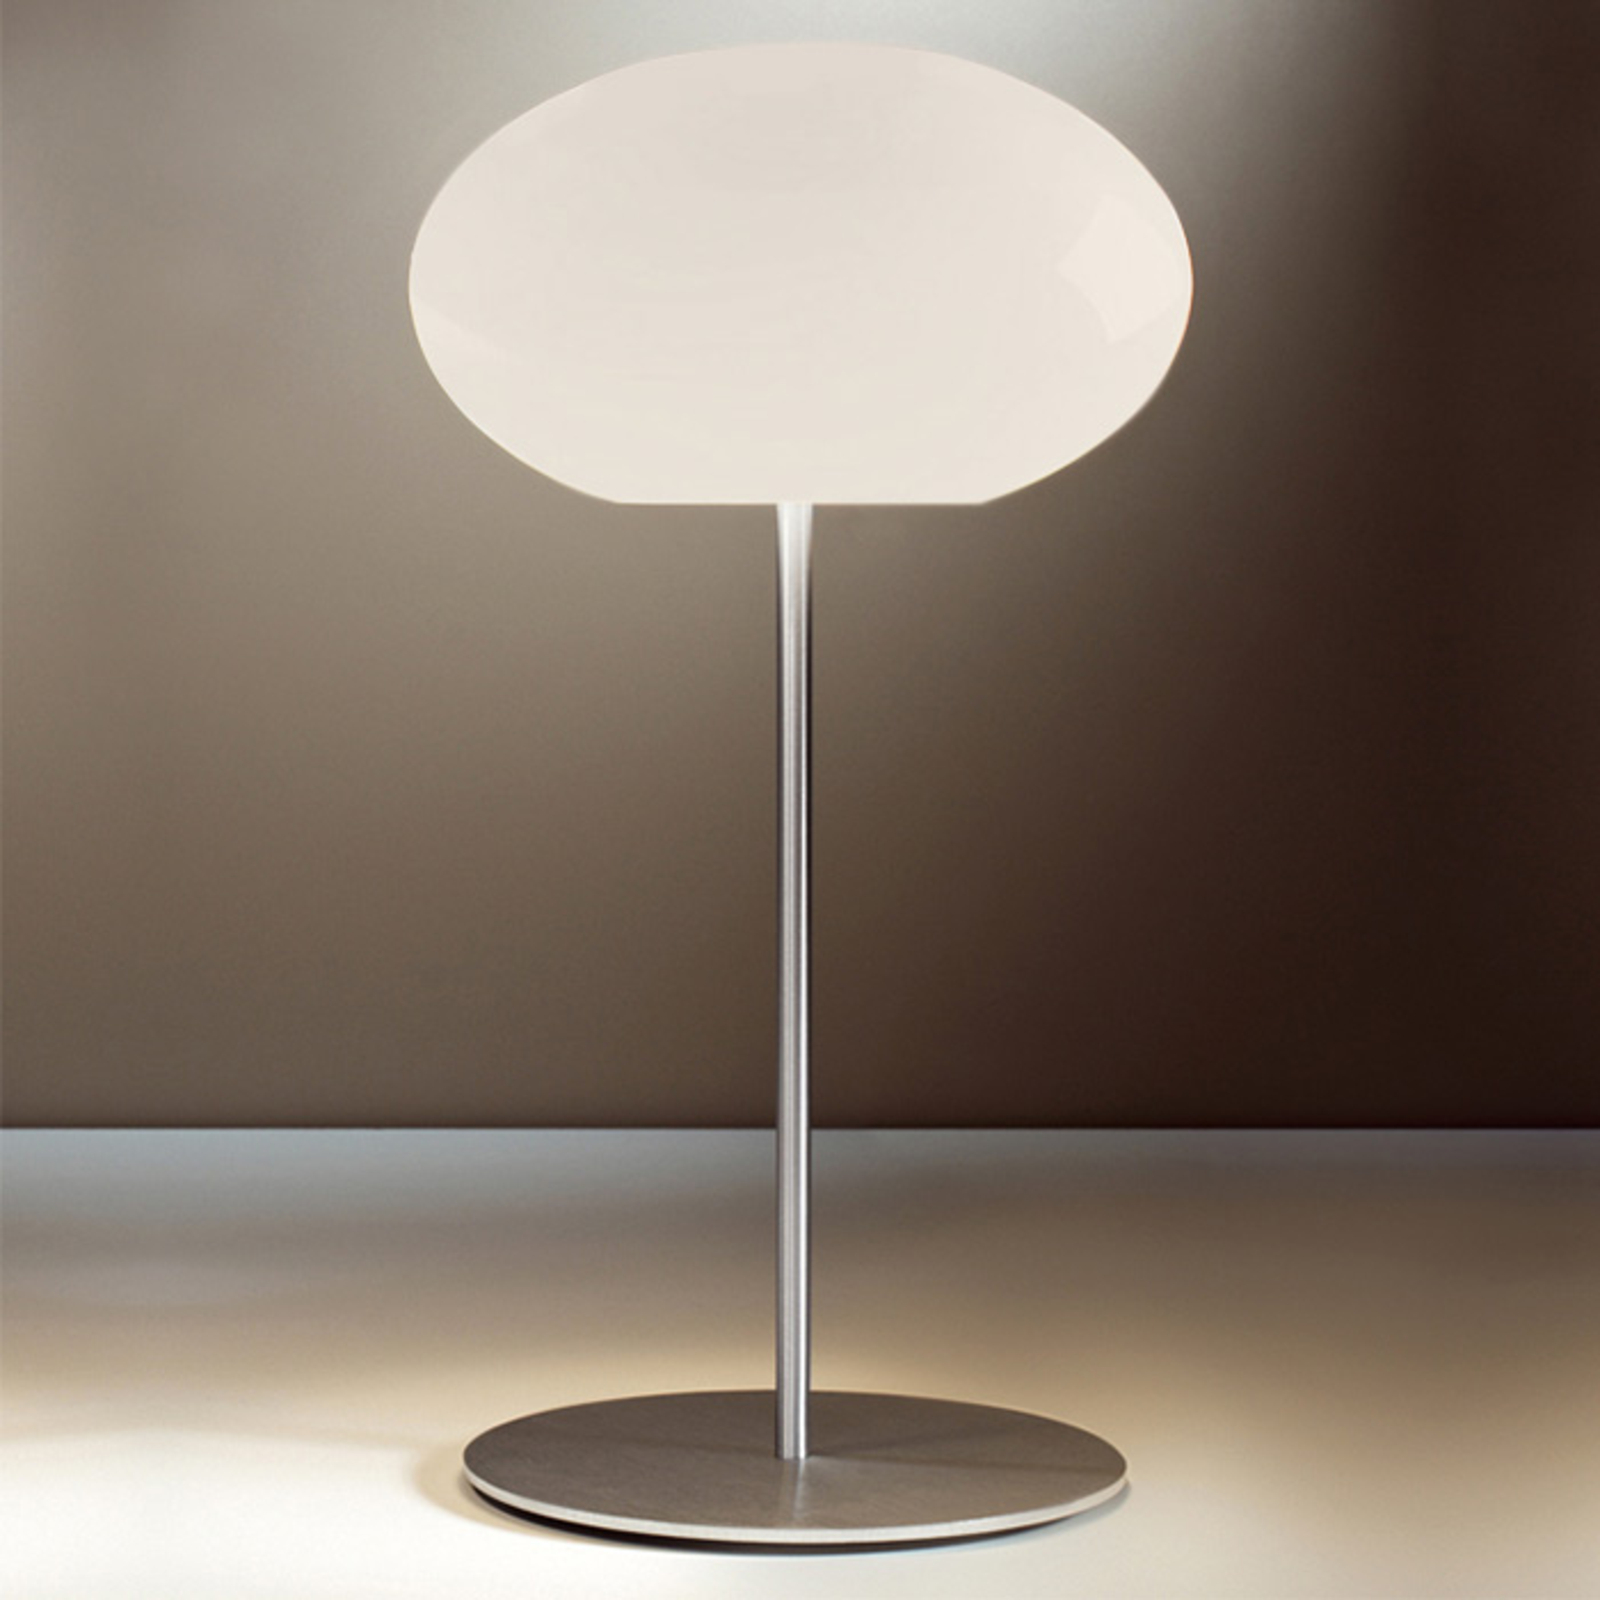 Casablanca Aih bordlampe, Ø 28 cm, blank creme